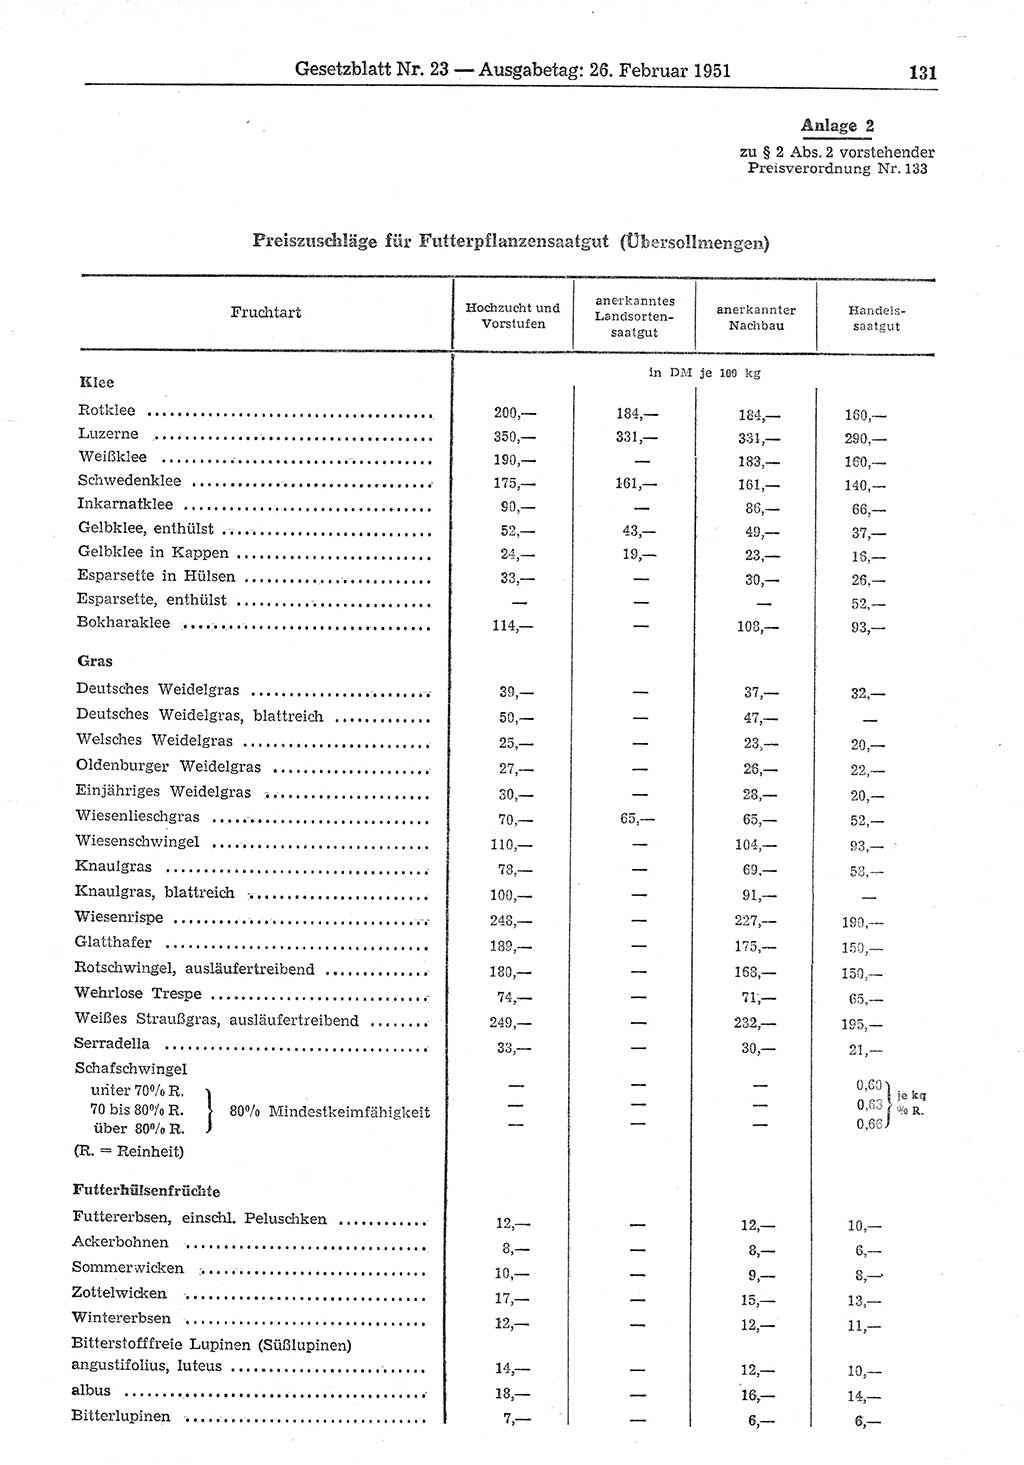 Gesetzblatt (GBl.) der Deutschen Demokratischen Republik (DDR) 1951, Seite 131 (GBl. DDR 1951, S. 131)